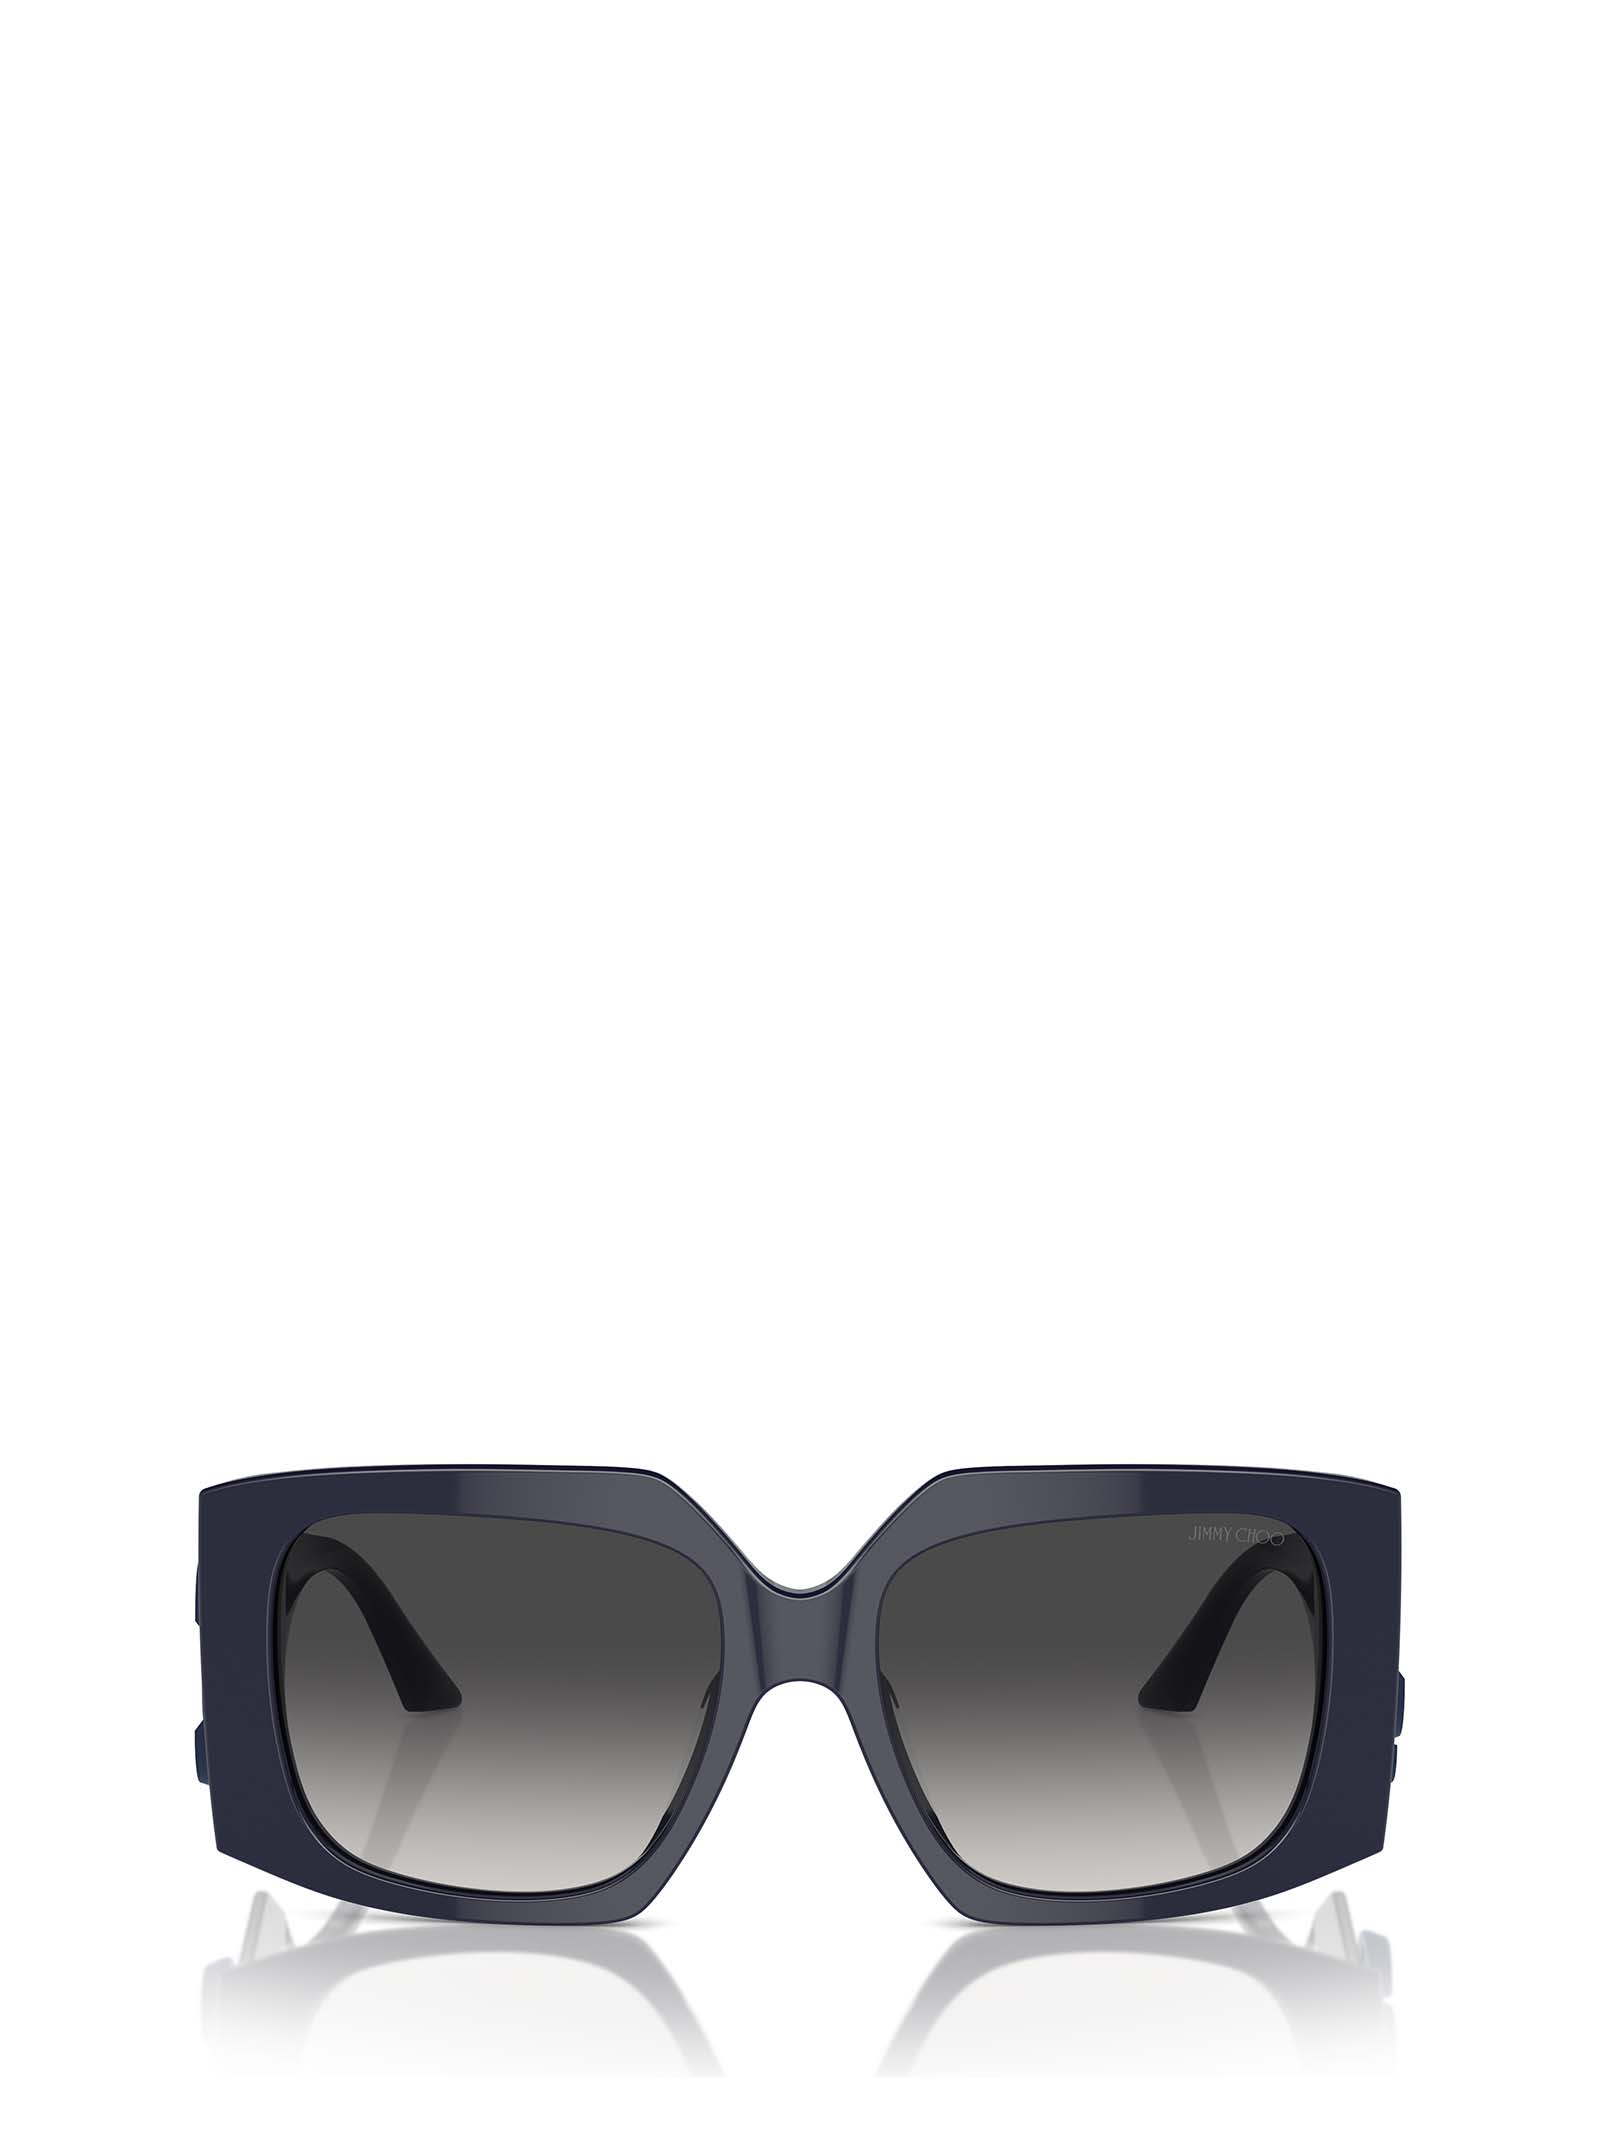 Jc5006u Blue Sunglasses